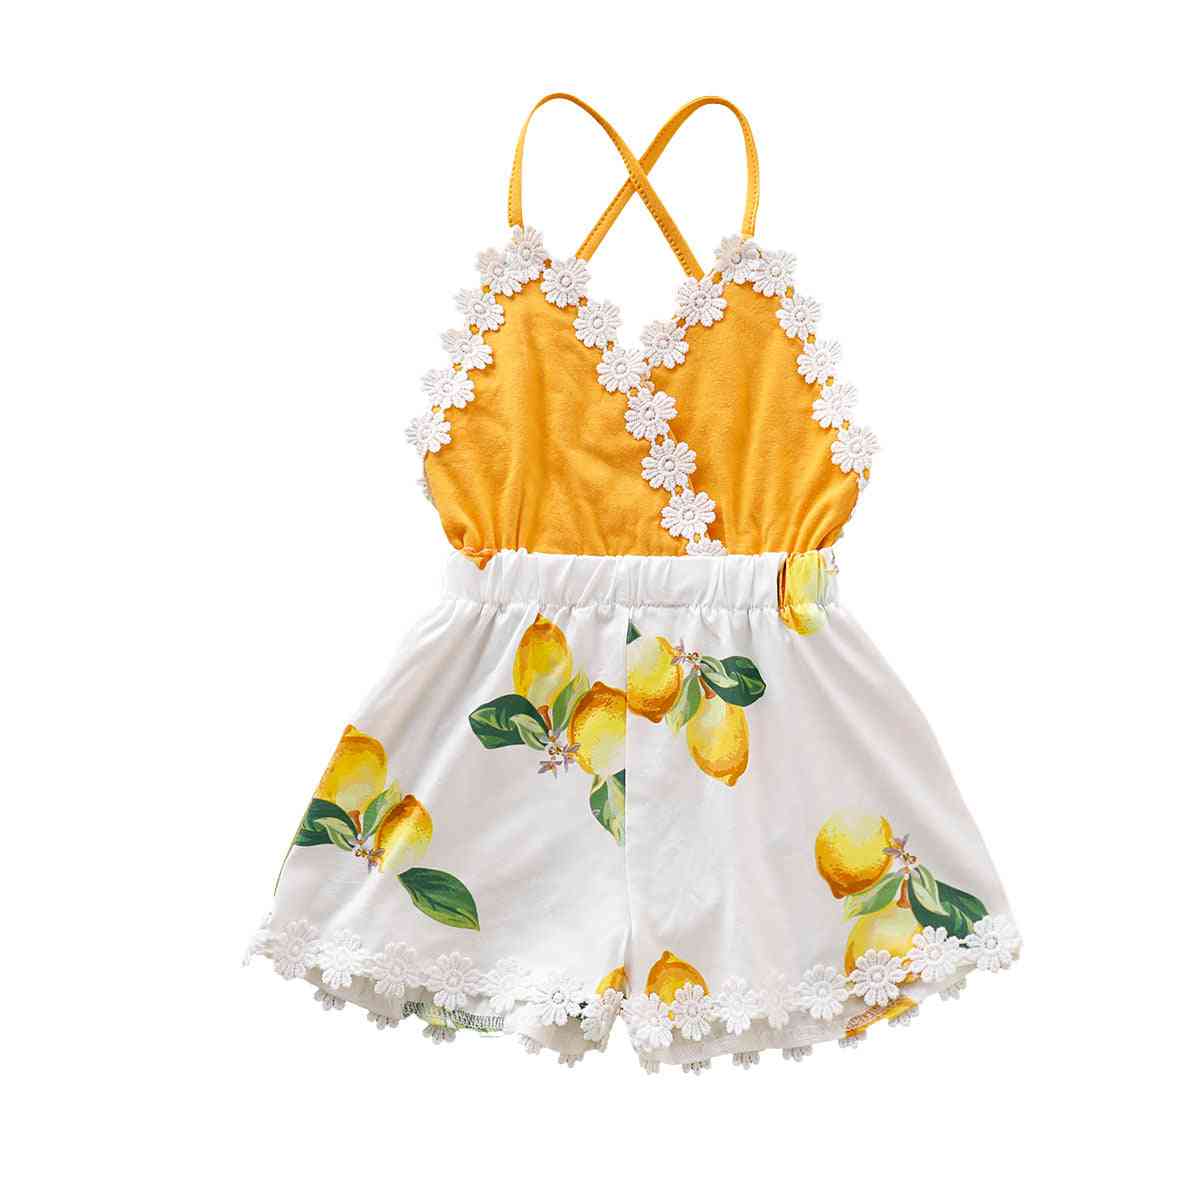 Baby flicka tofs rygglösa spets lapptäcke citron tryckt mode kläder soldräkt kläder - gul / 3m